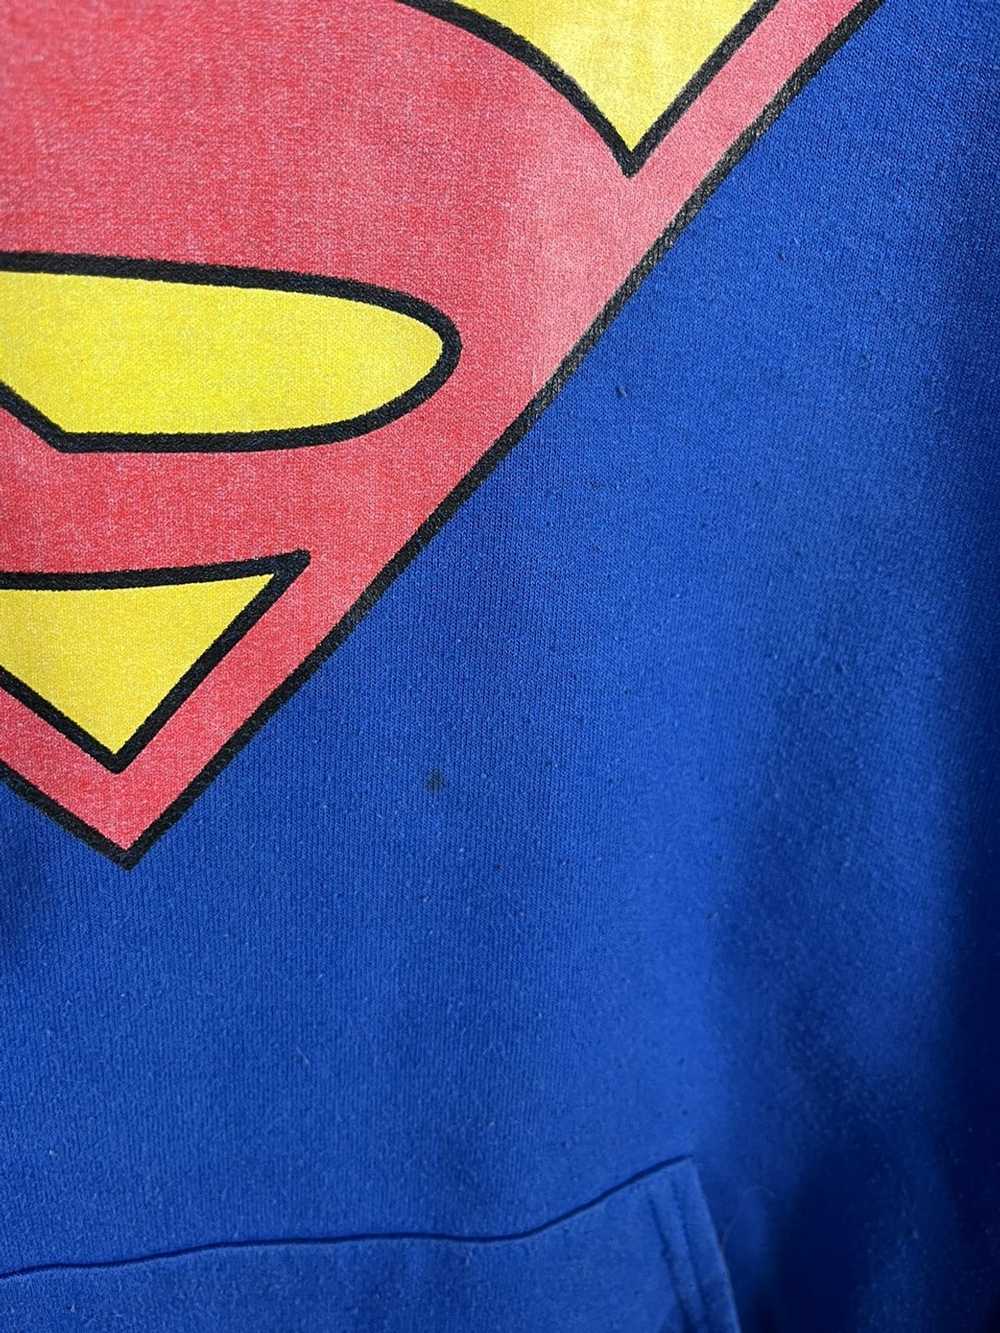 Other × Streetwear × Vintage Superman Hoodie - image 3